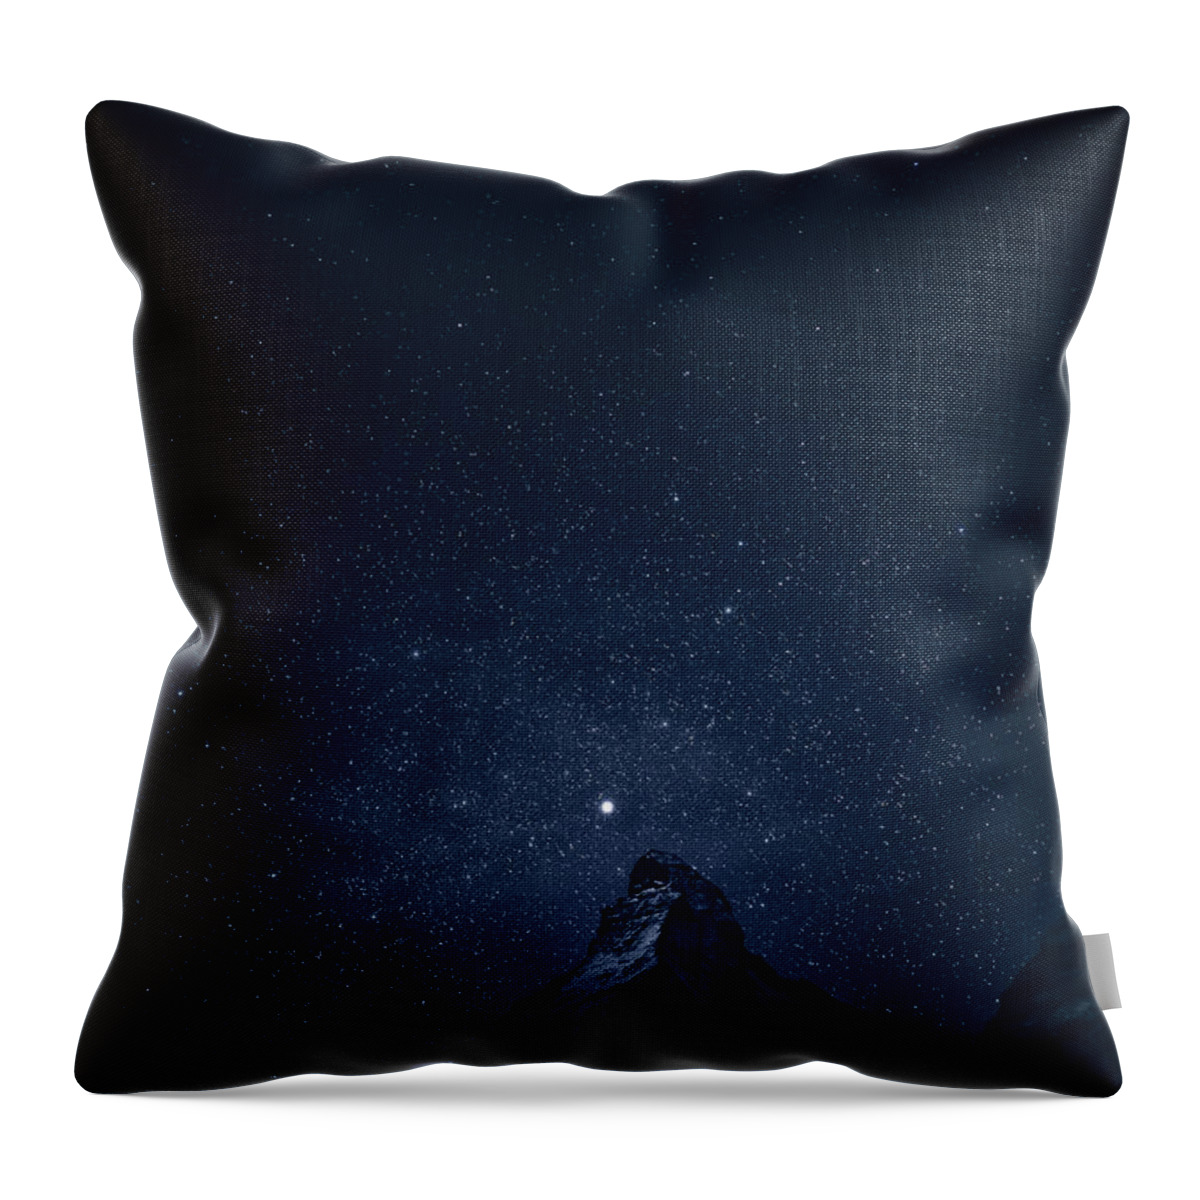 Switzerland Throw Pillow featuring the photograph Matterhorn Sterne by Robert Fawcett